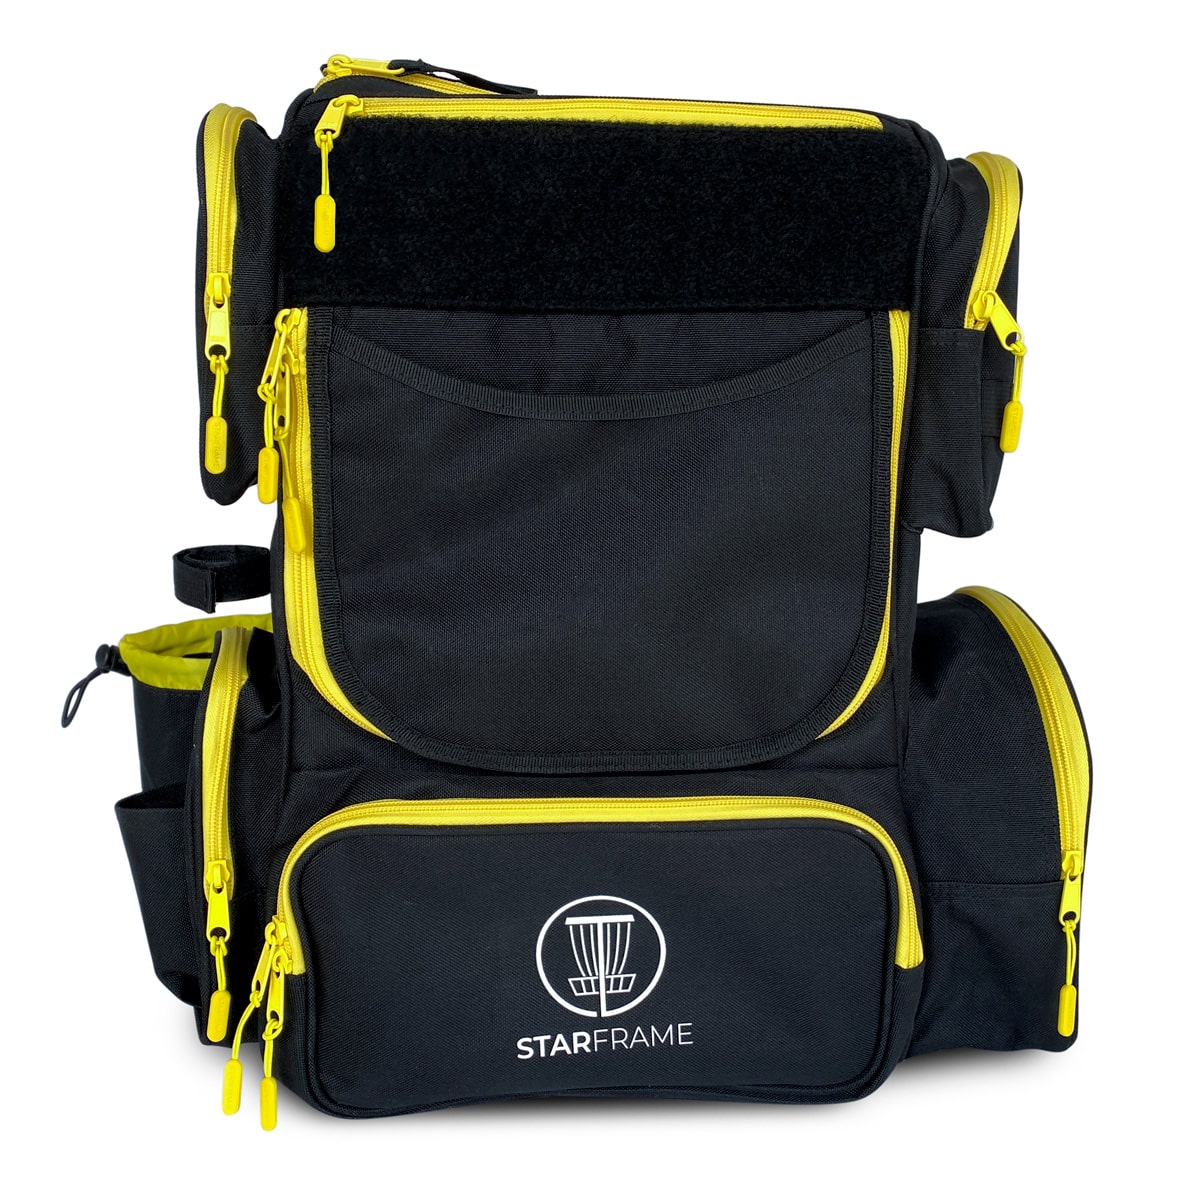 BANDIDO Disc Golf Bag With Slide-in Cooler